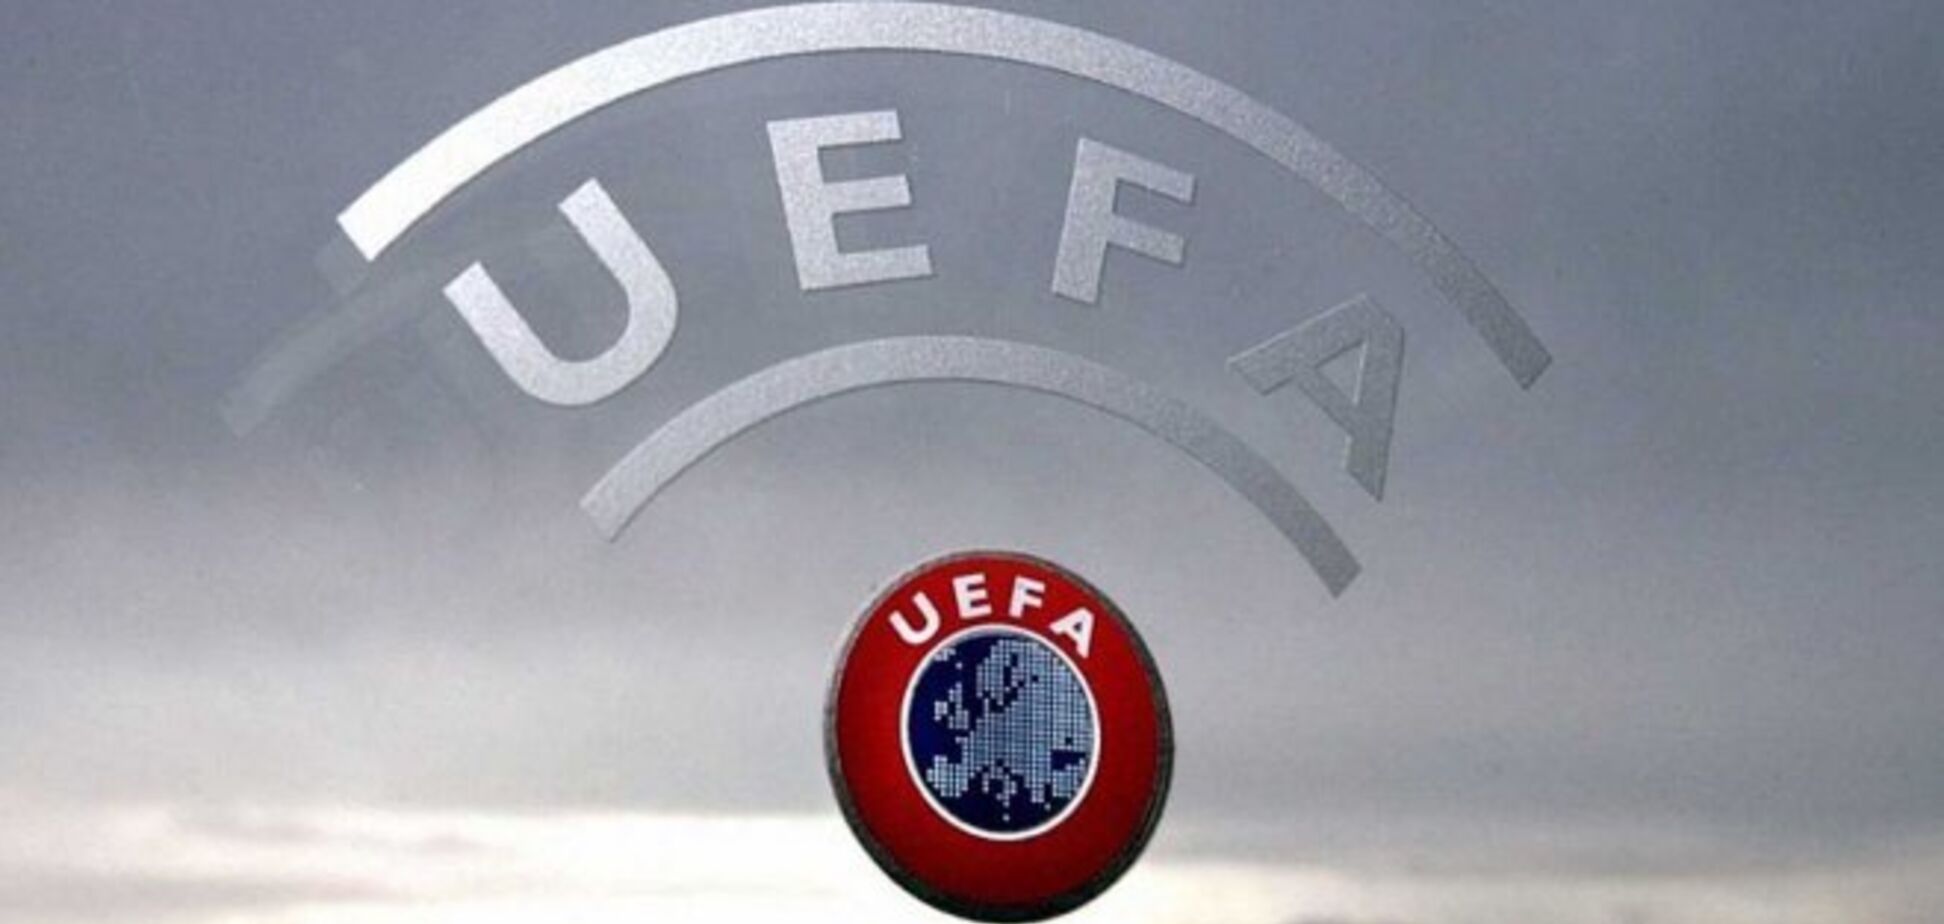 УЕФА обновил таблицу коэффициентов